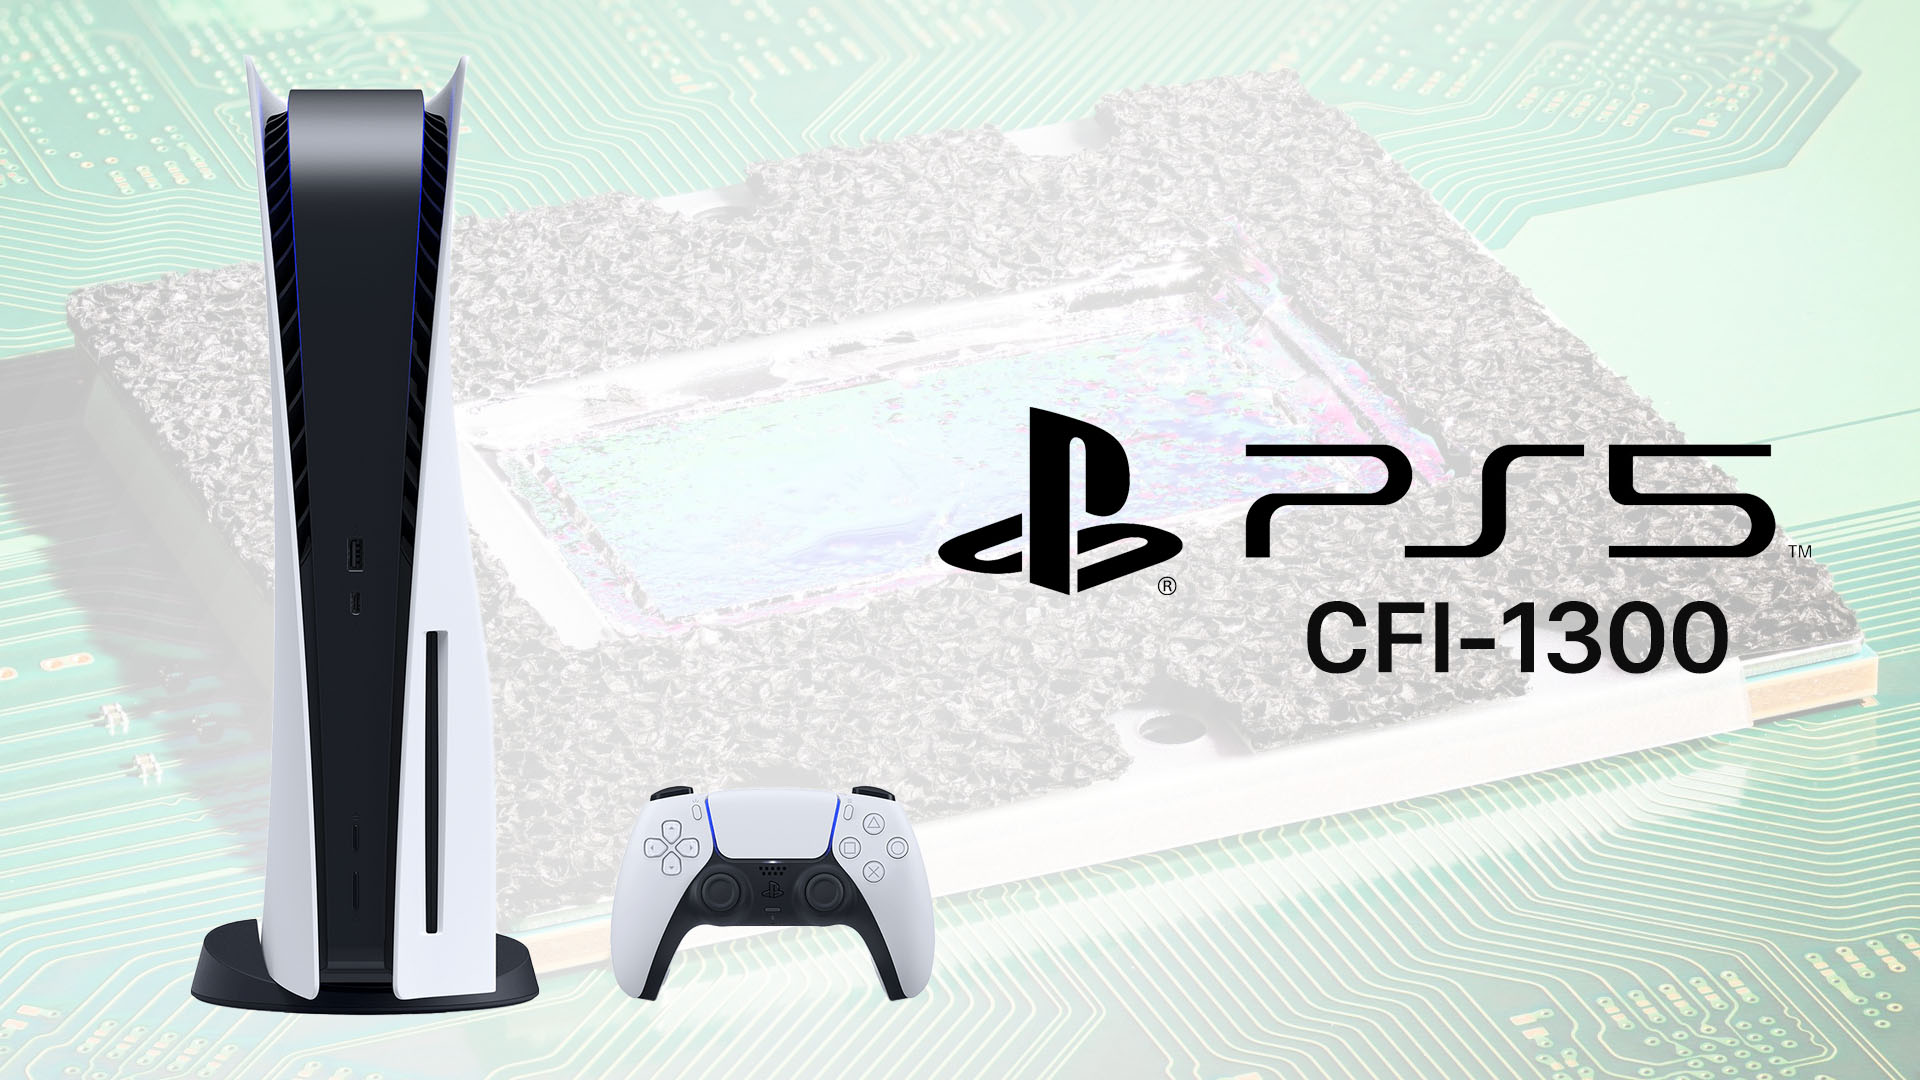 新型PlayStation 5 (PS5)のCFI-1300は5nm APU採用で液体金属を廃止へ。